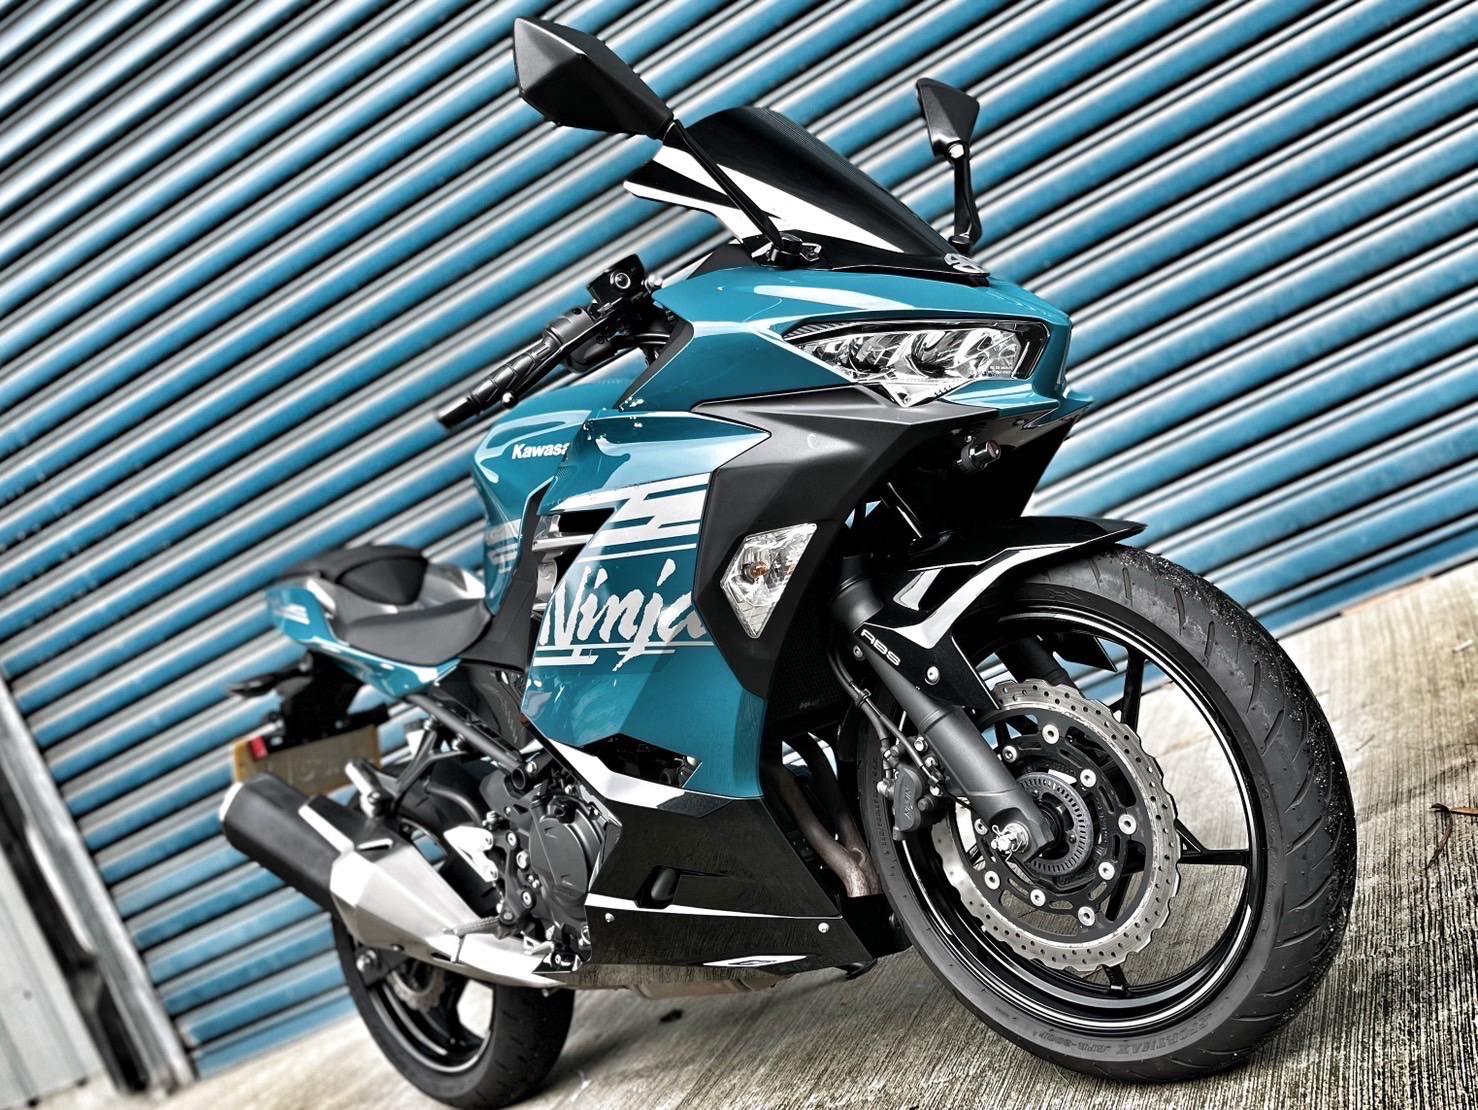 【小資族二手重機買賣】KAWASAKI NINJA400 - 「Webike-摩托車市」 原廠保固 無摔無事故 里程保證 小資族二手重機買賣